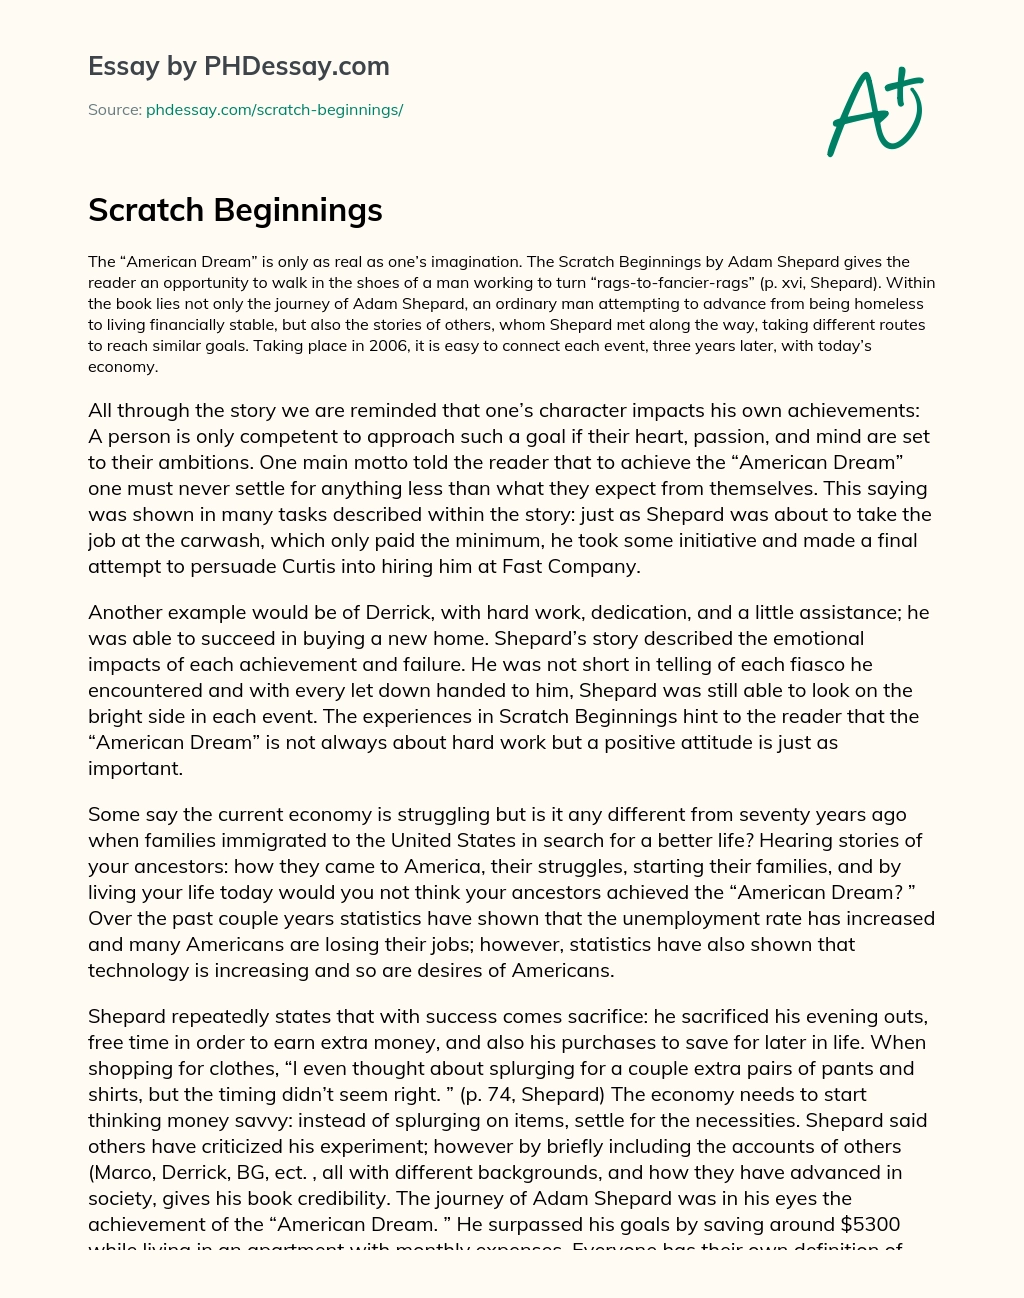 Scratch Beginnings essay